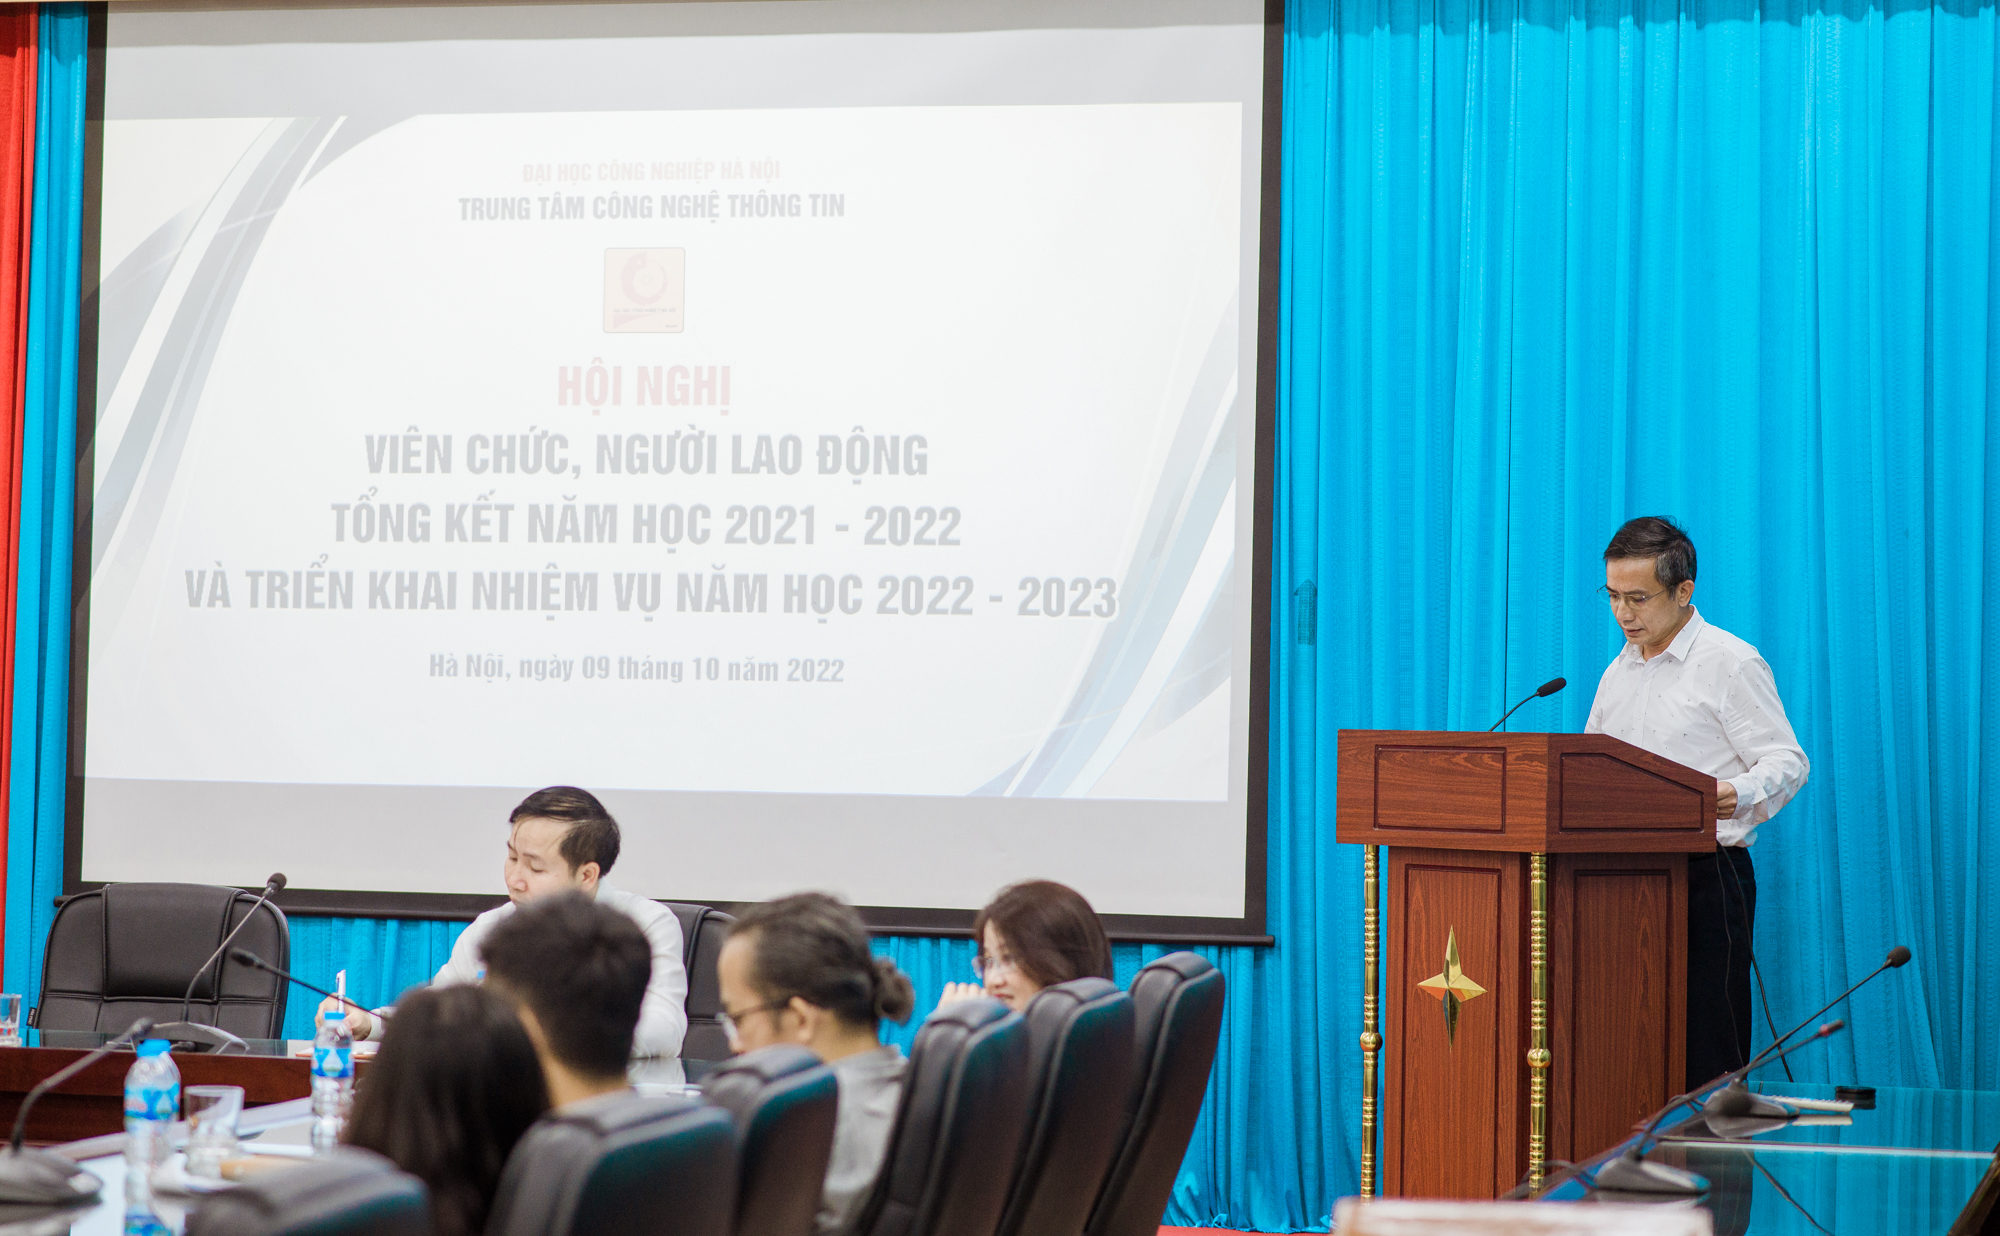 Hội nghị cán bộ viên chức, tổng kết năm học 2021 - 2022 và triển khai nhiệm vụ năm học 2022 – 2023